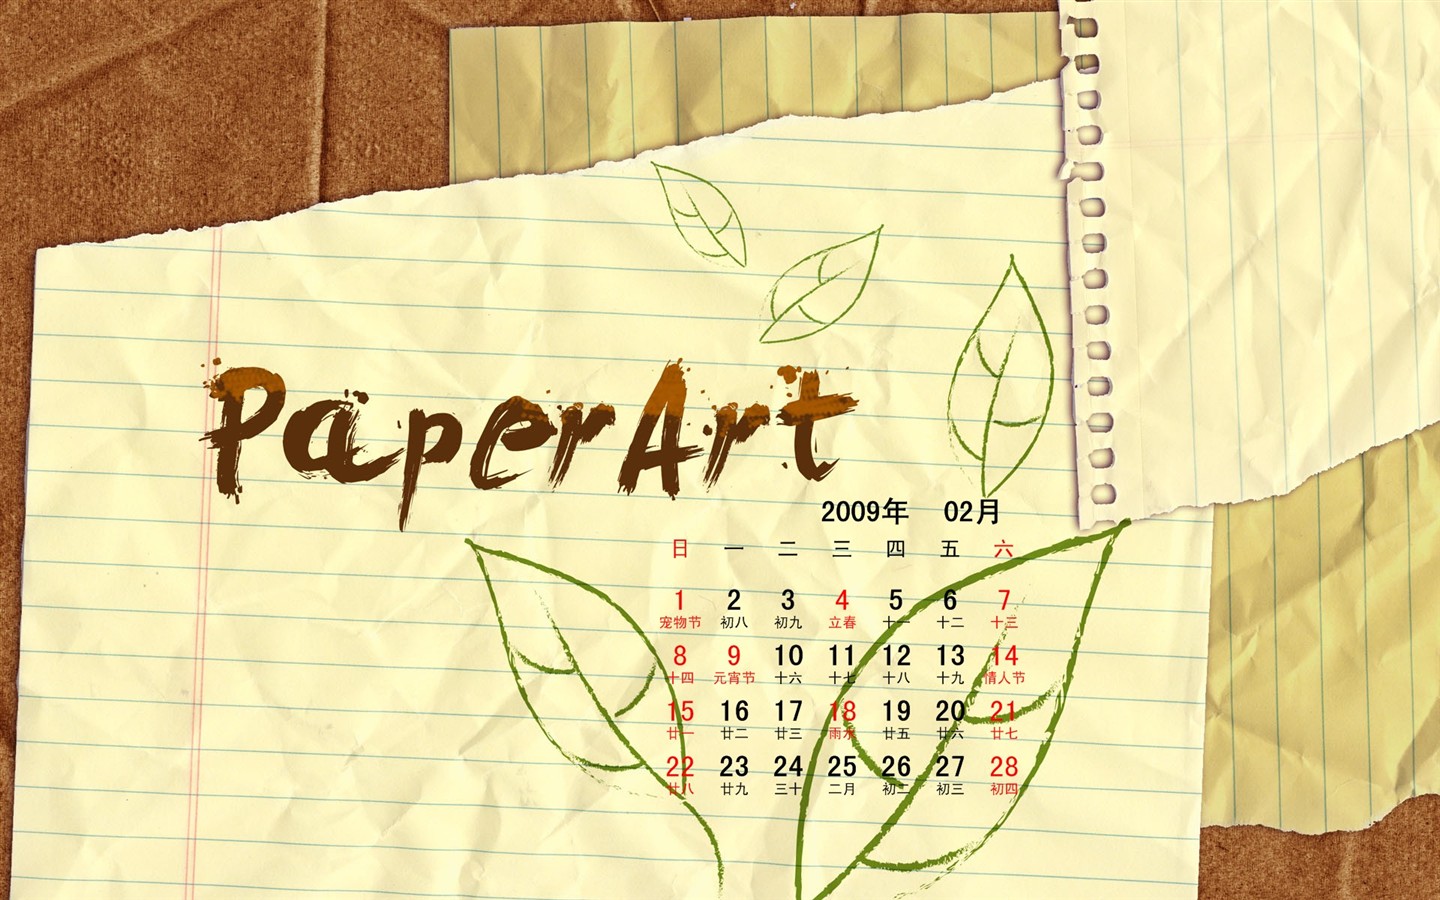 PaperArt 09 años en el fondo de pantalla de calendario febrero #27 - 1440x900